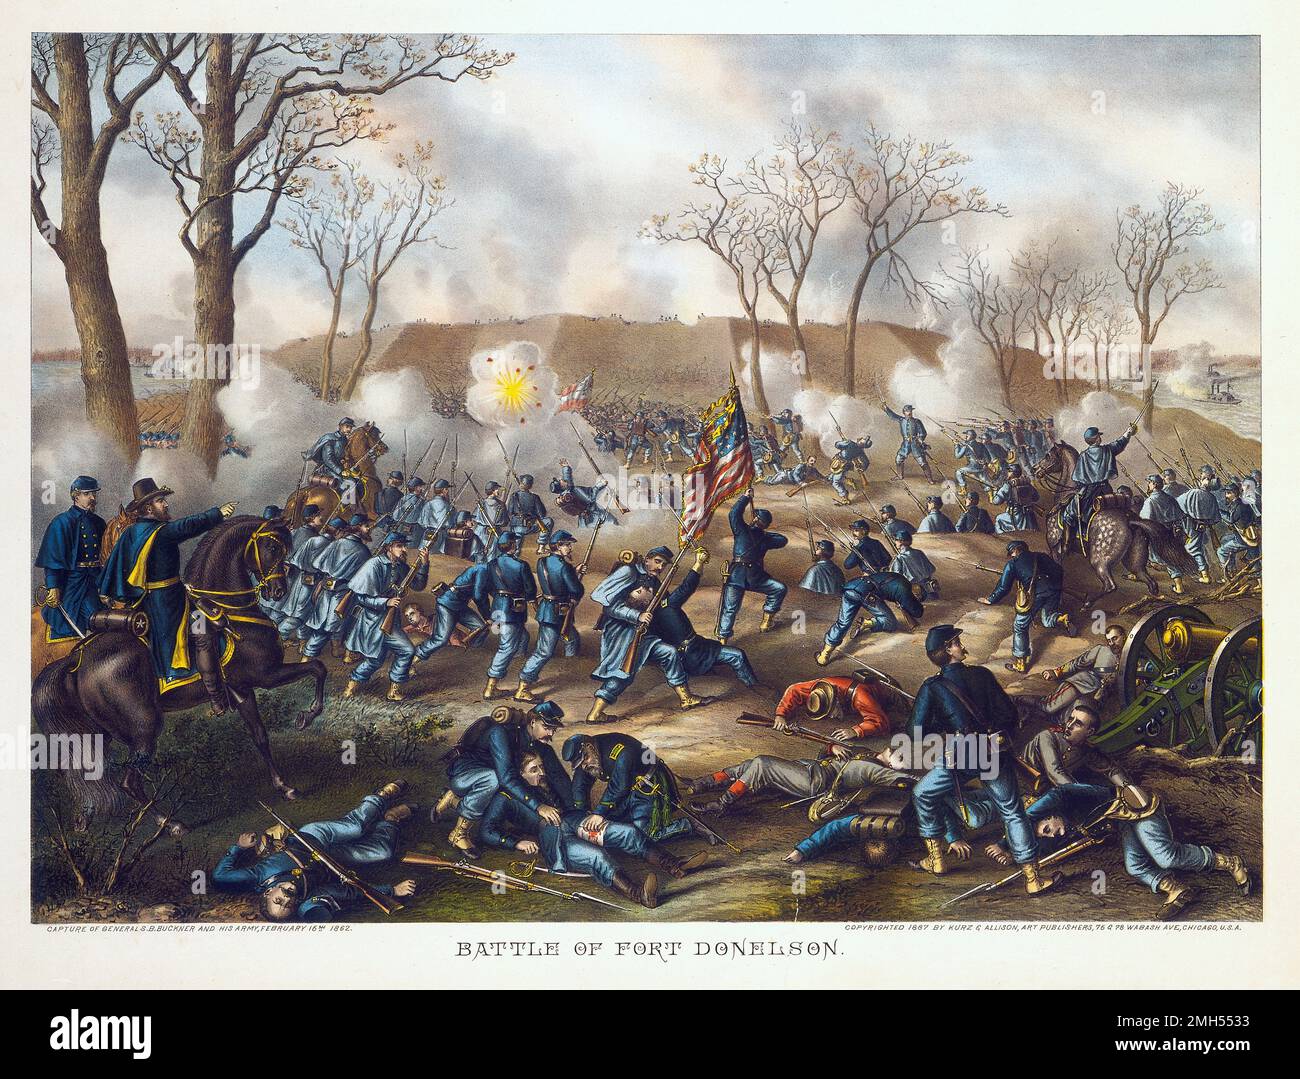 Die Schlacht von Fort Donelson war eine Schlacht im Amerikanischen Bürgerkrieg vom 11. Bis 12. Februar 1862 in Kentucky. Es war ein amphibischer Angriff der Unionisten auf Fort Donelson unter dem Kommando von Odysseus Grant, und es war ein unionistischer Sieg, als das Fort eingenommen wurde. Stockfoto